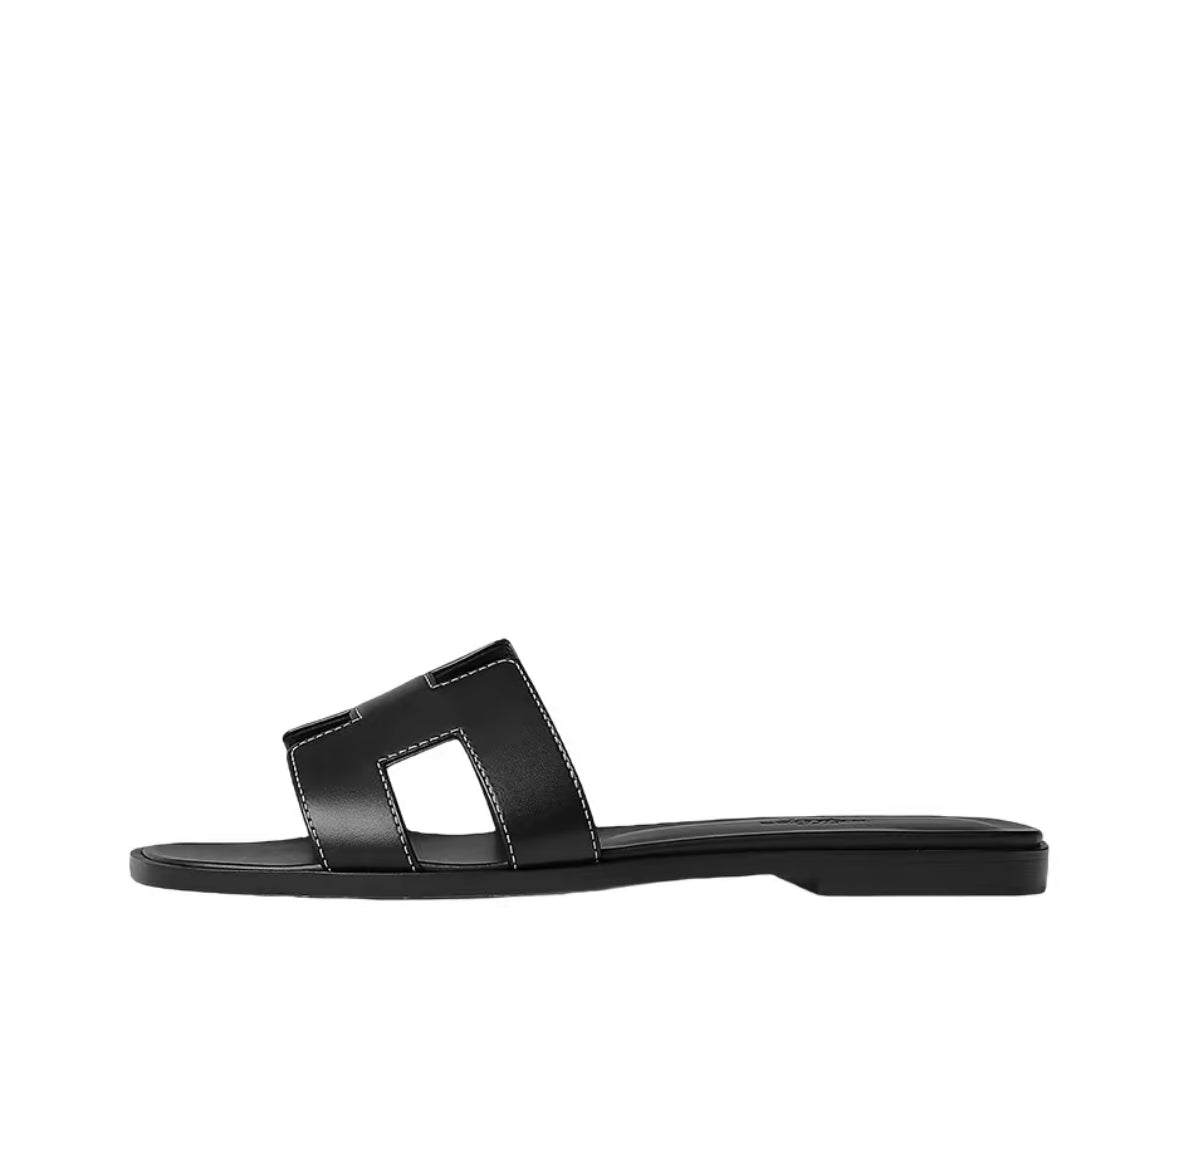 Hermes Oran Sandals “Black”